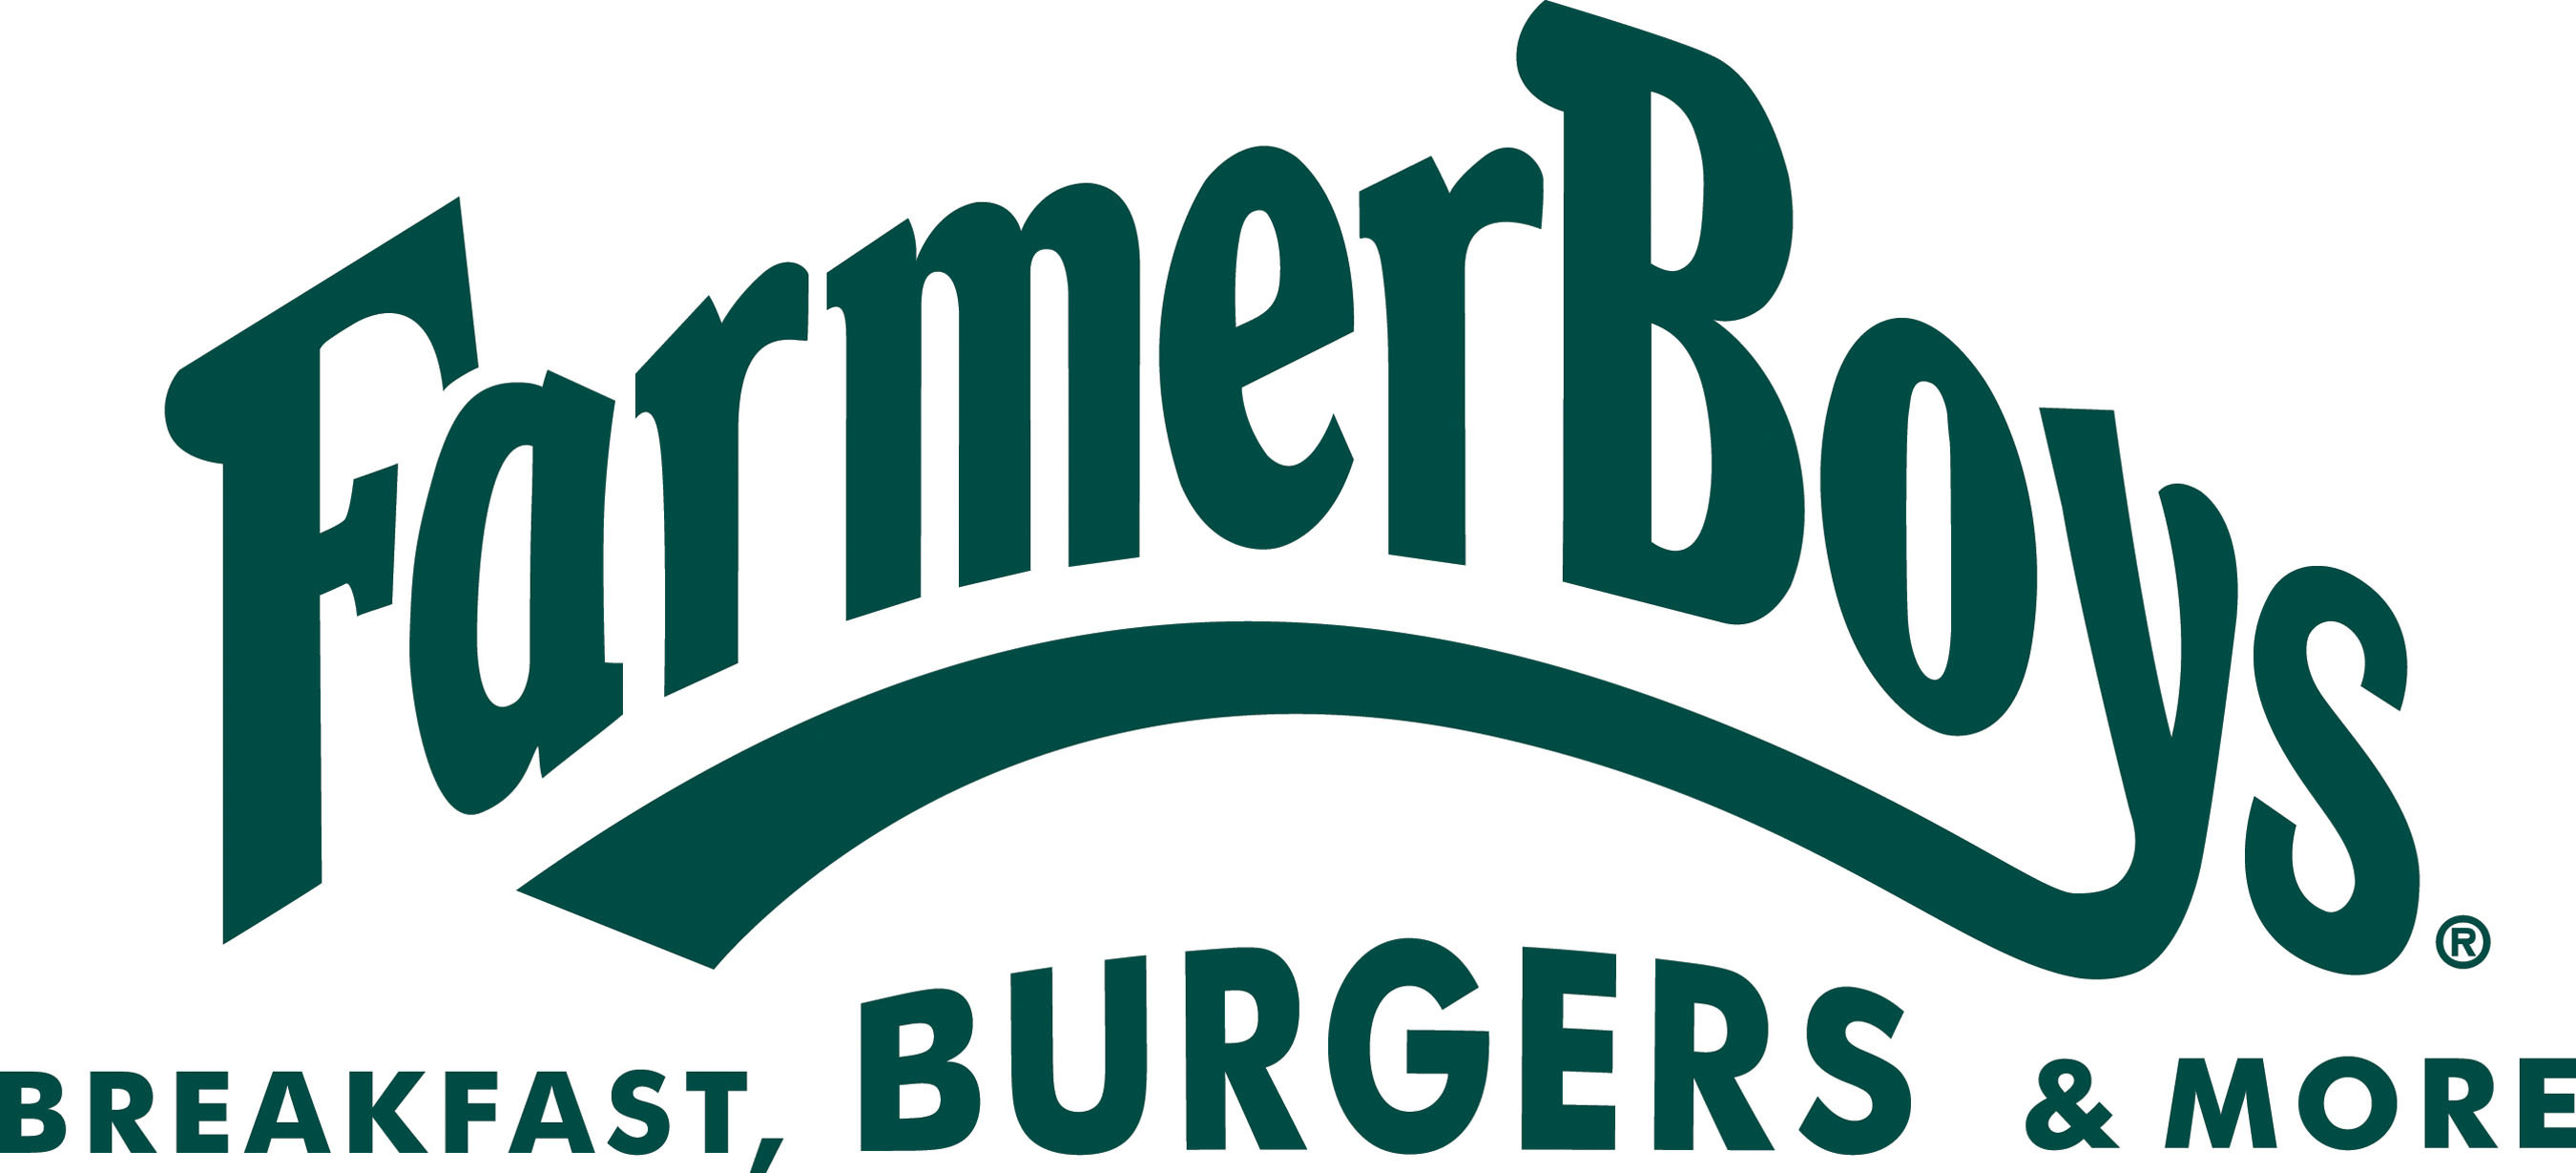 Farmer Boys Food, Inc. Logo.